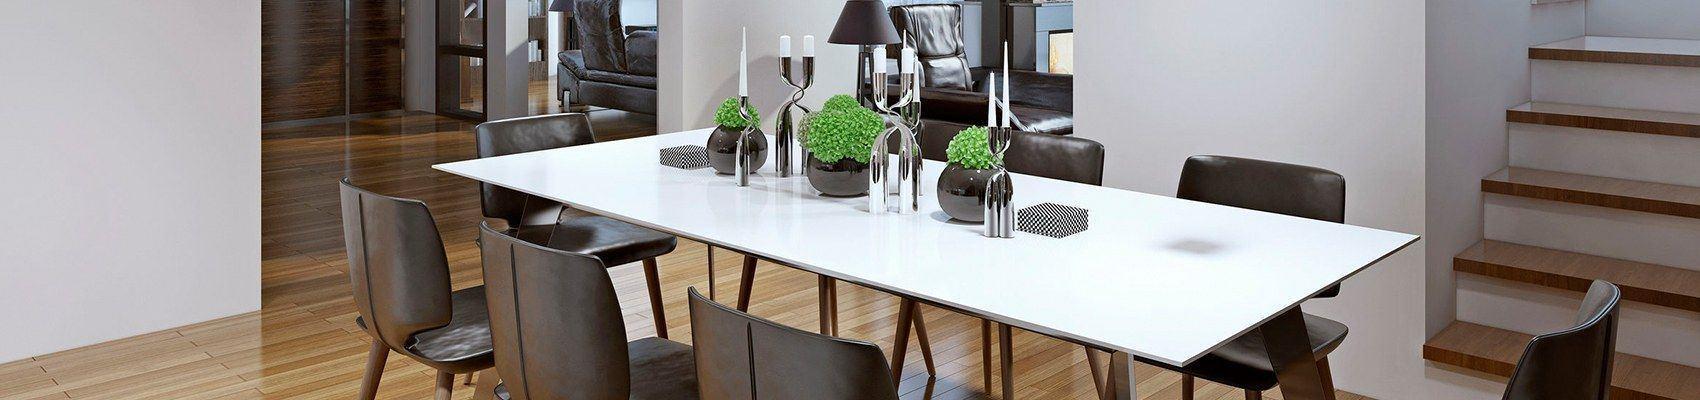 Tische für Küche und Esszimmer - moderne Esstische